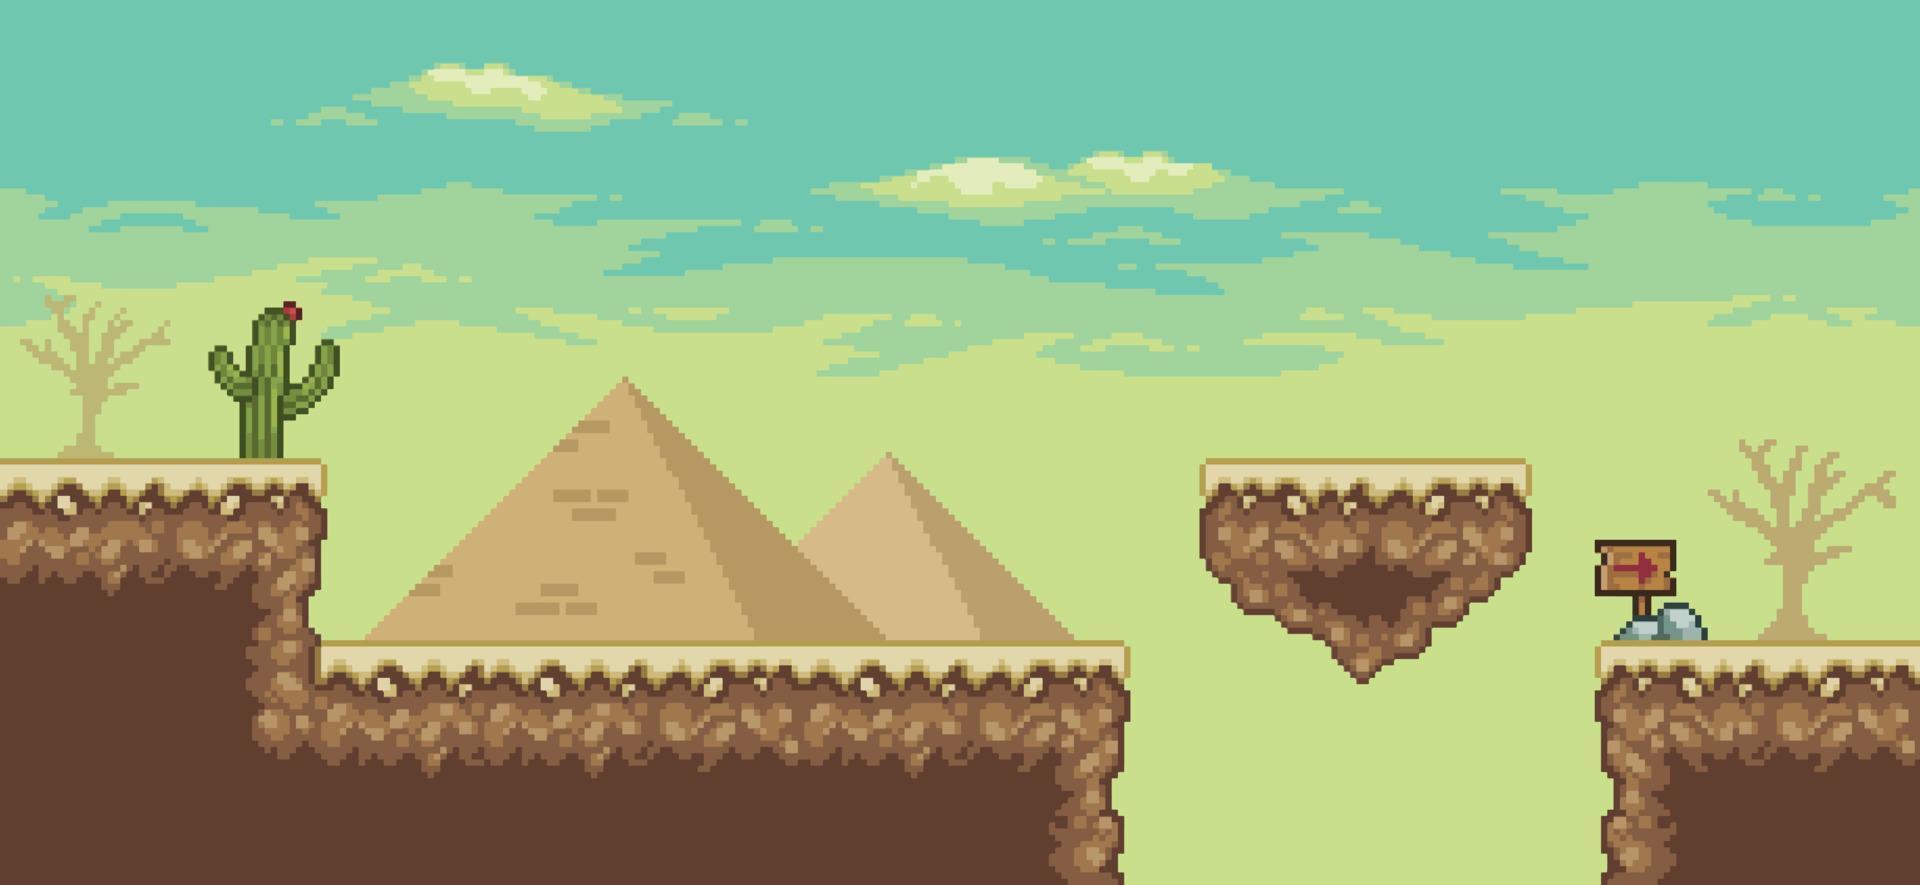 cena do jogo do deserto de pixel art com pirâmide, ilha flutuante, palmeira, cactos, placa de direção fundo de 8 bits vetor